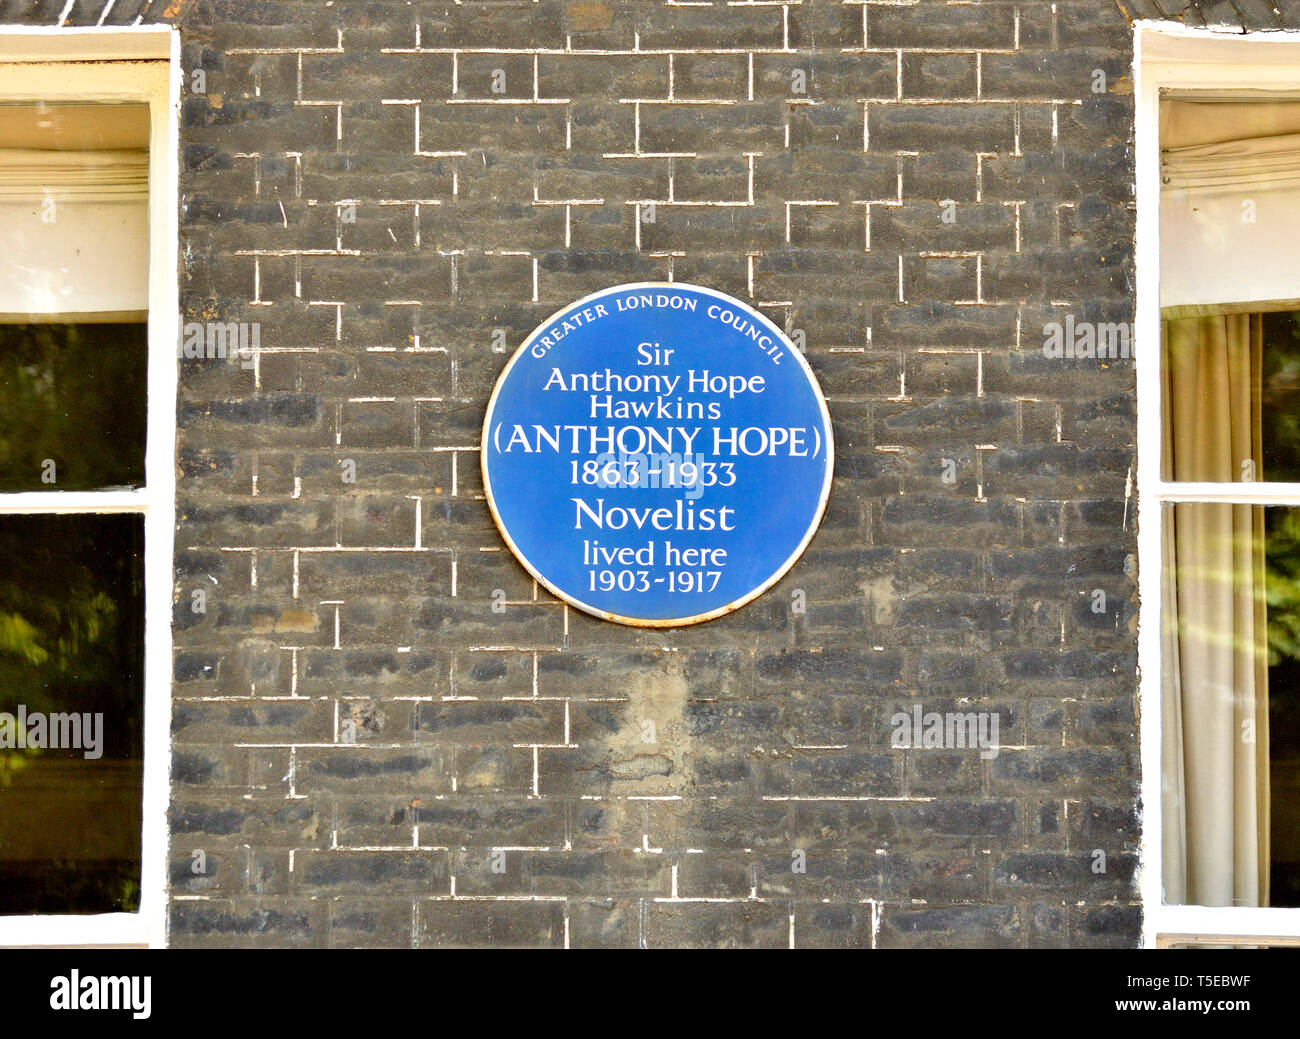 Londres, Angleterre, Royaume-Uni. Blue Plaque commémorative : Sir Anthony Hope Hawkins (Anthony Hope) 1863 - 1933, le romancier a vécu ici 1903-1917. 41 Bedford Square Banque D'Images